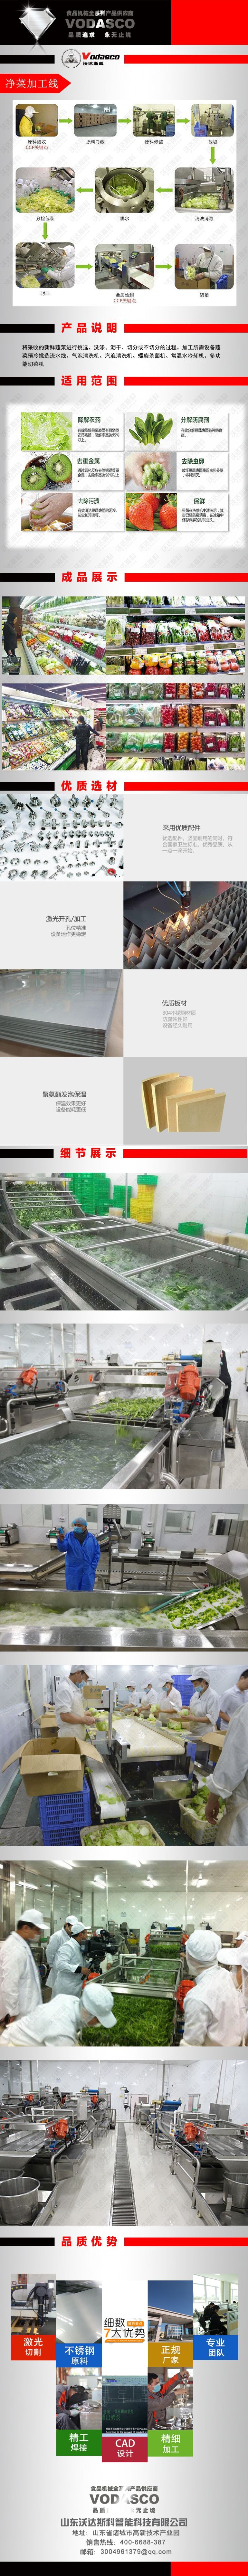 净菜设备 净菜加工生产线设备 果蔬加工成套设备 瑞迪食品机械示例图1